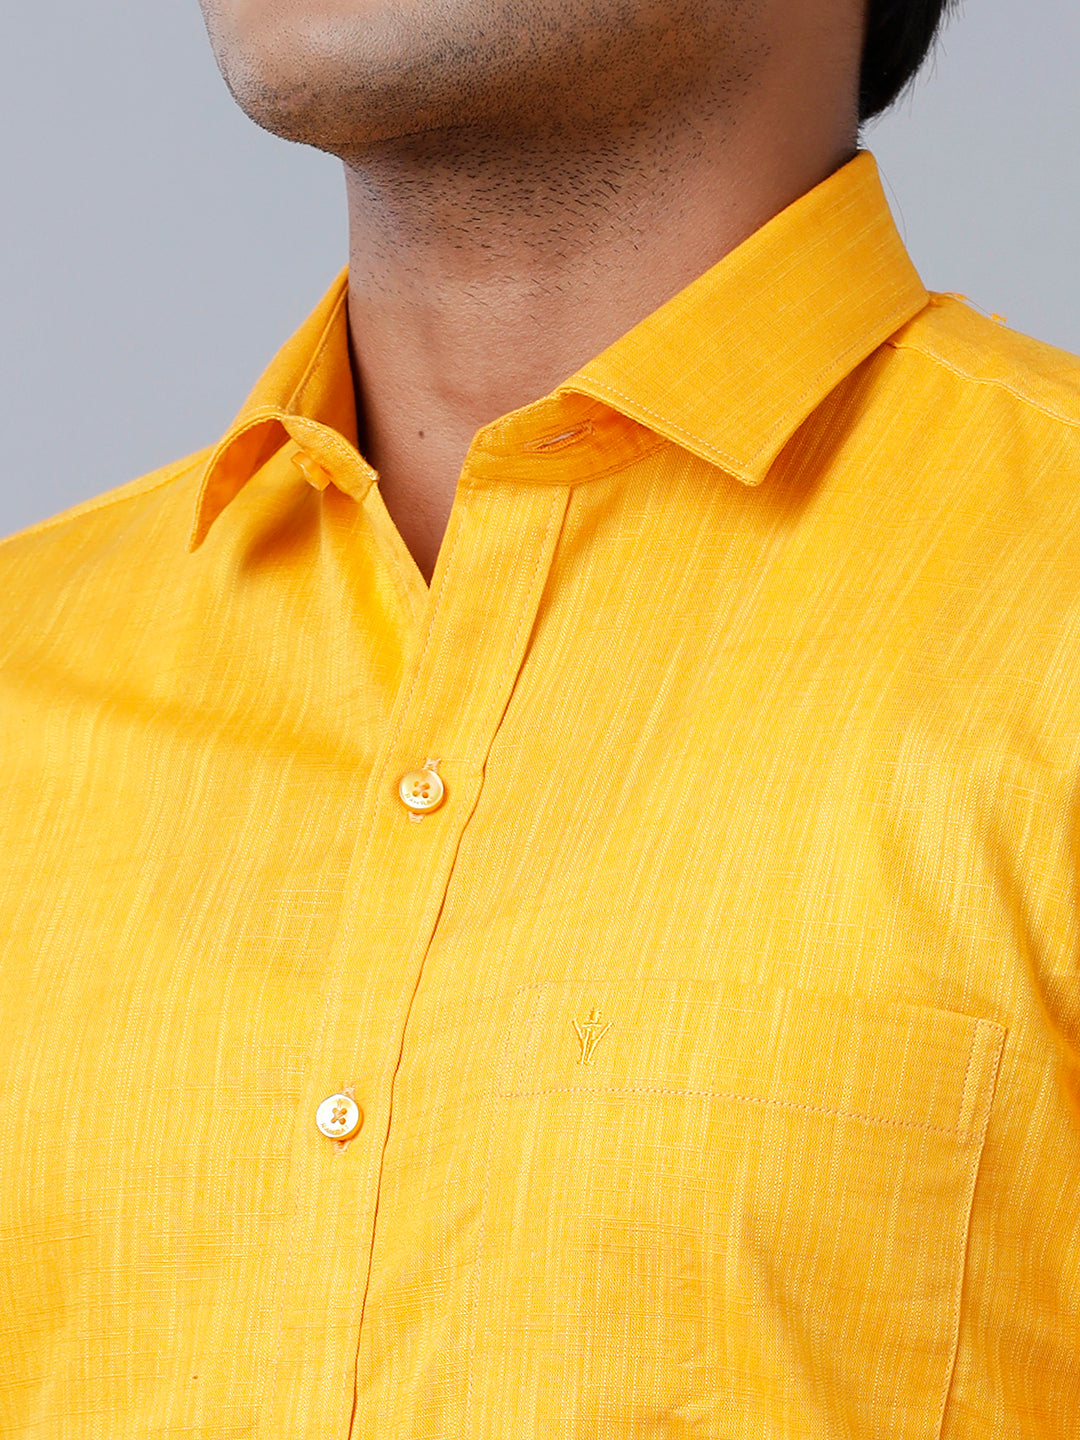 Mens Formal Shirt Half Sleeves Orange CL2 GT34-Zoom view